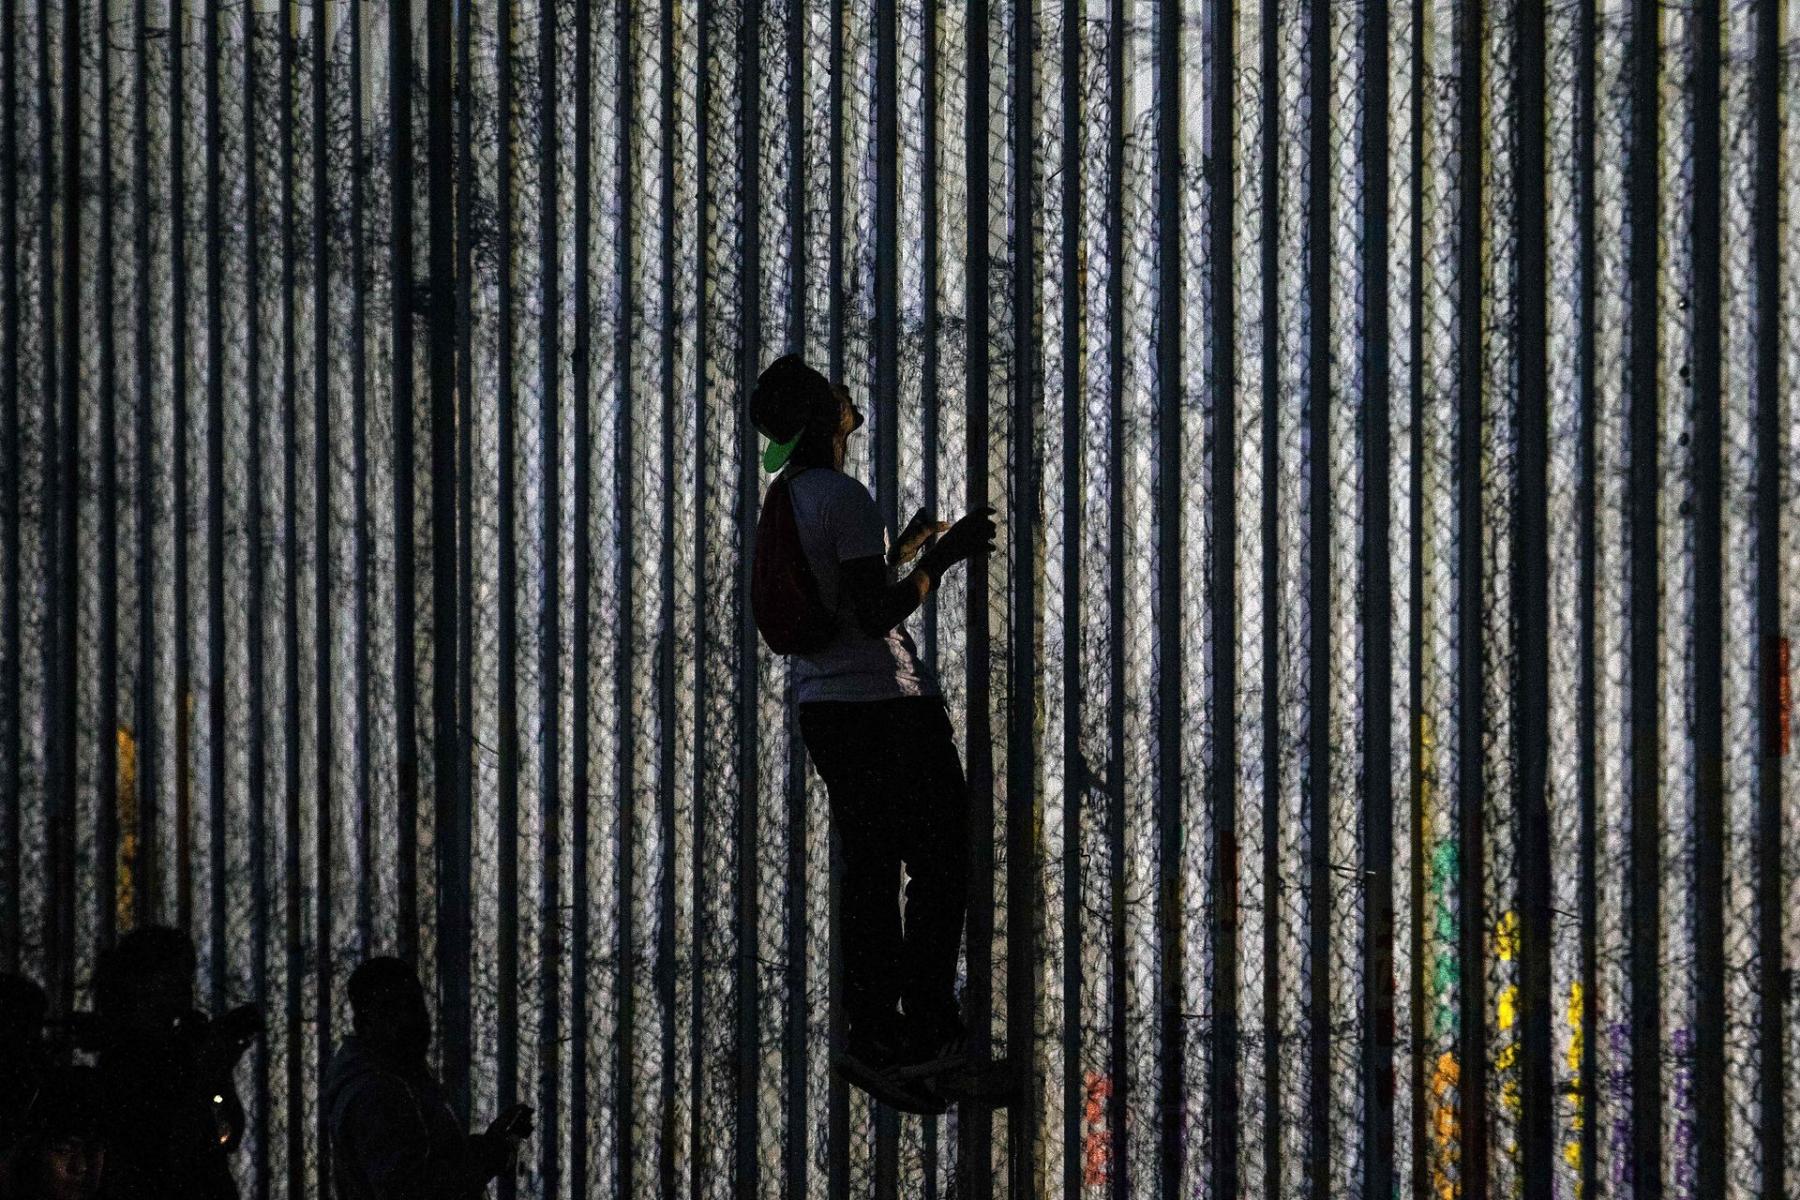 Mexico-US border fence in Playas de Tijuana